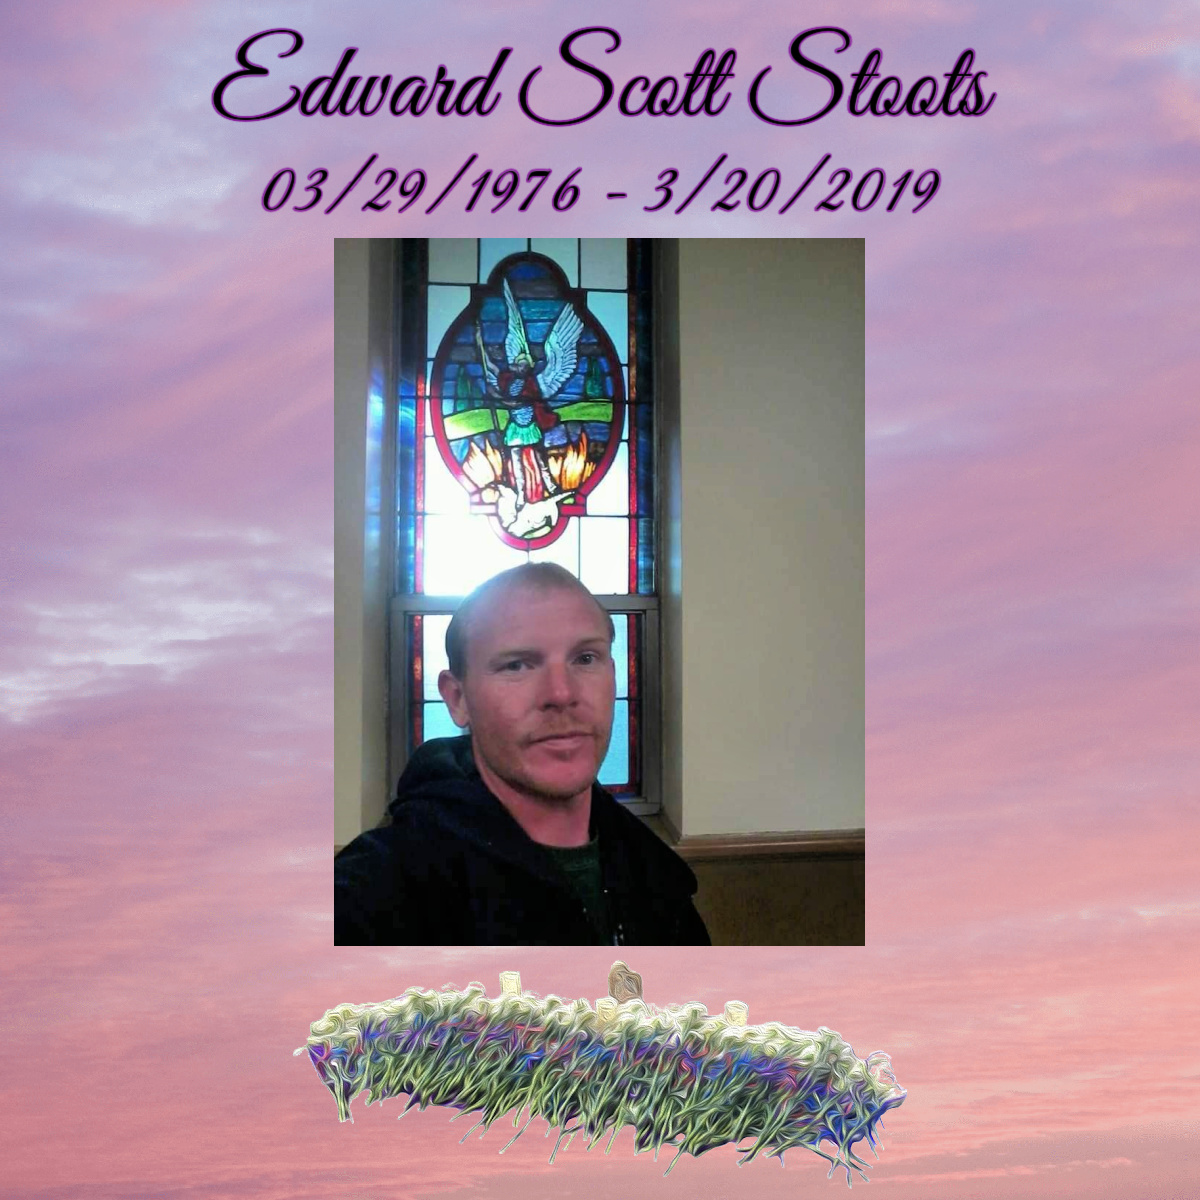 Edward Scott Stoots